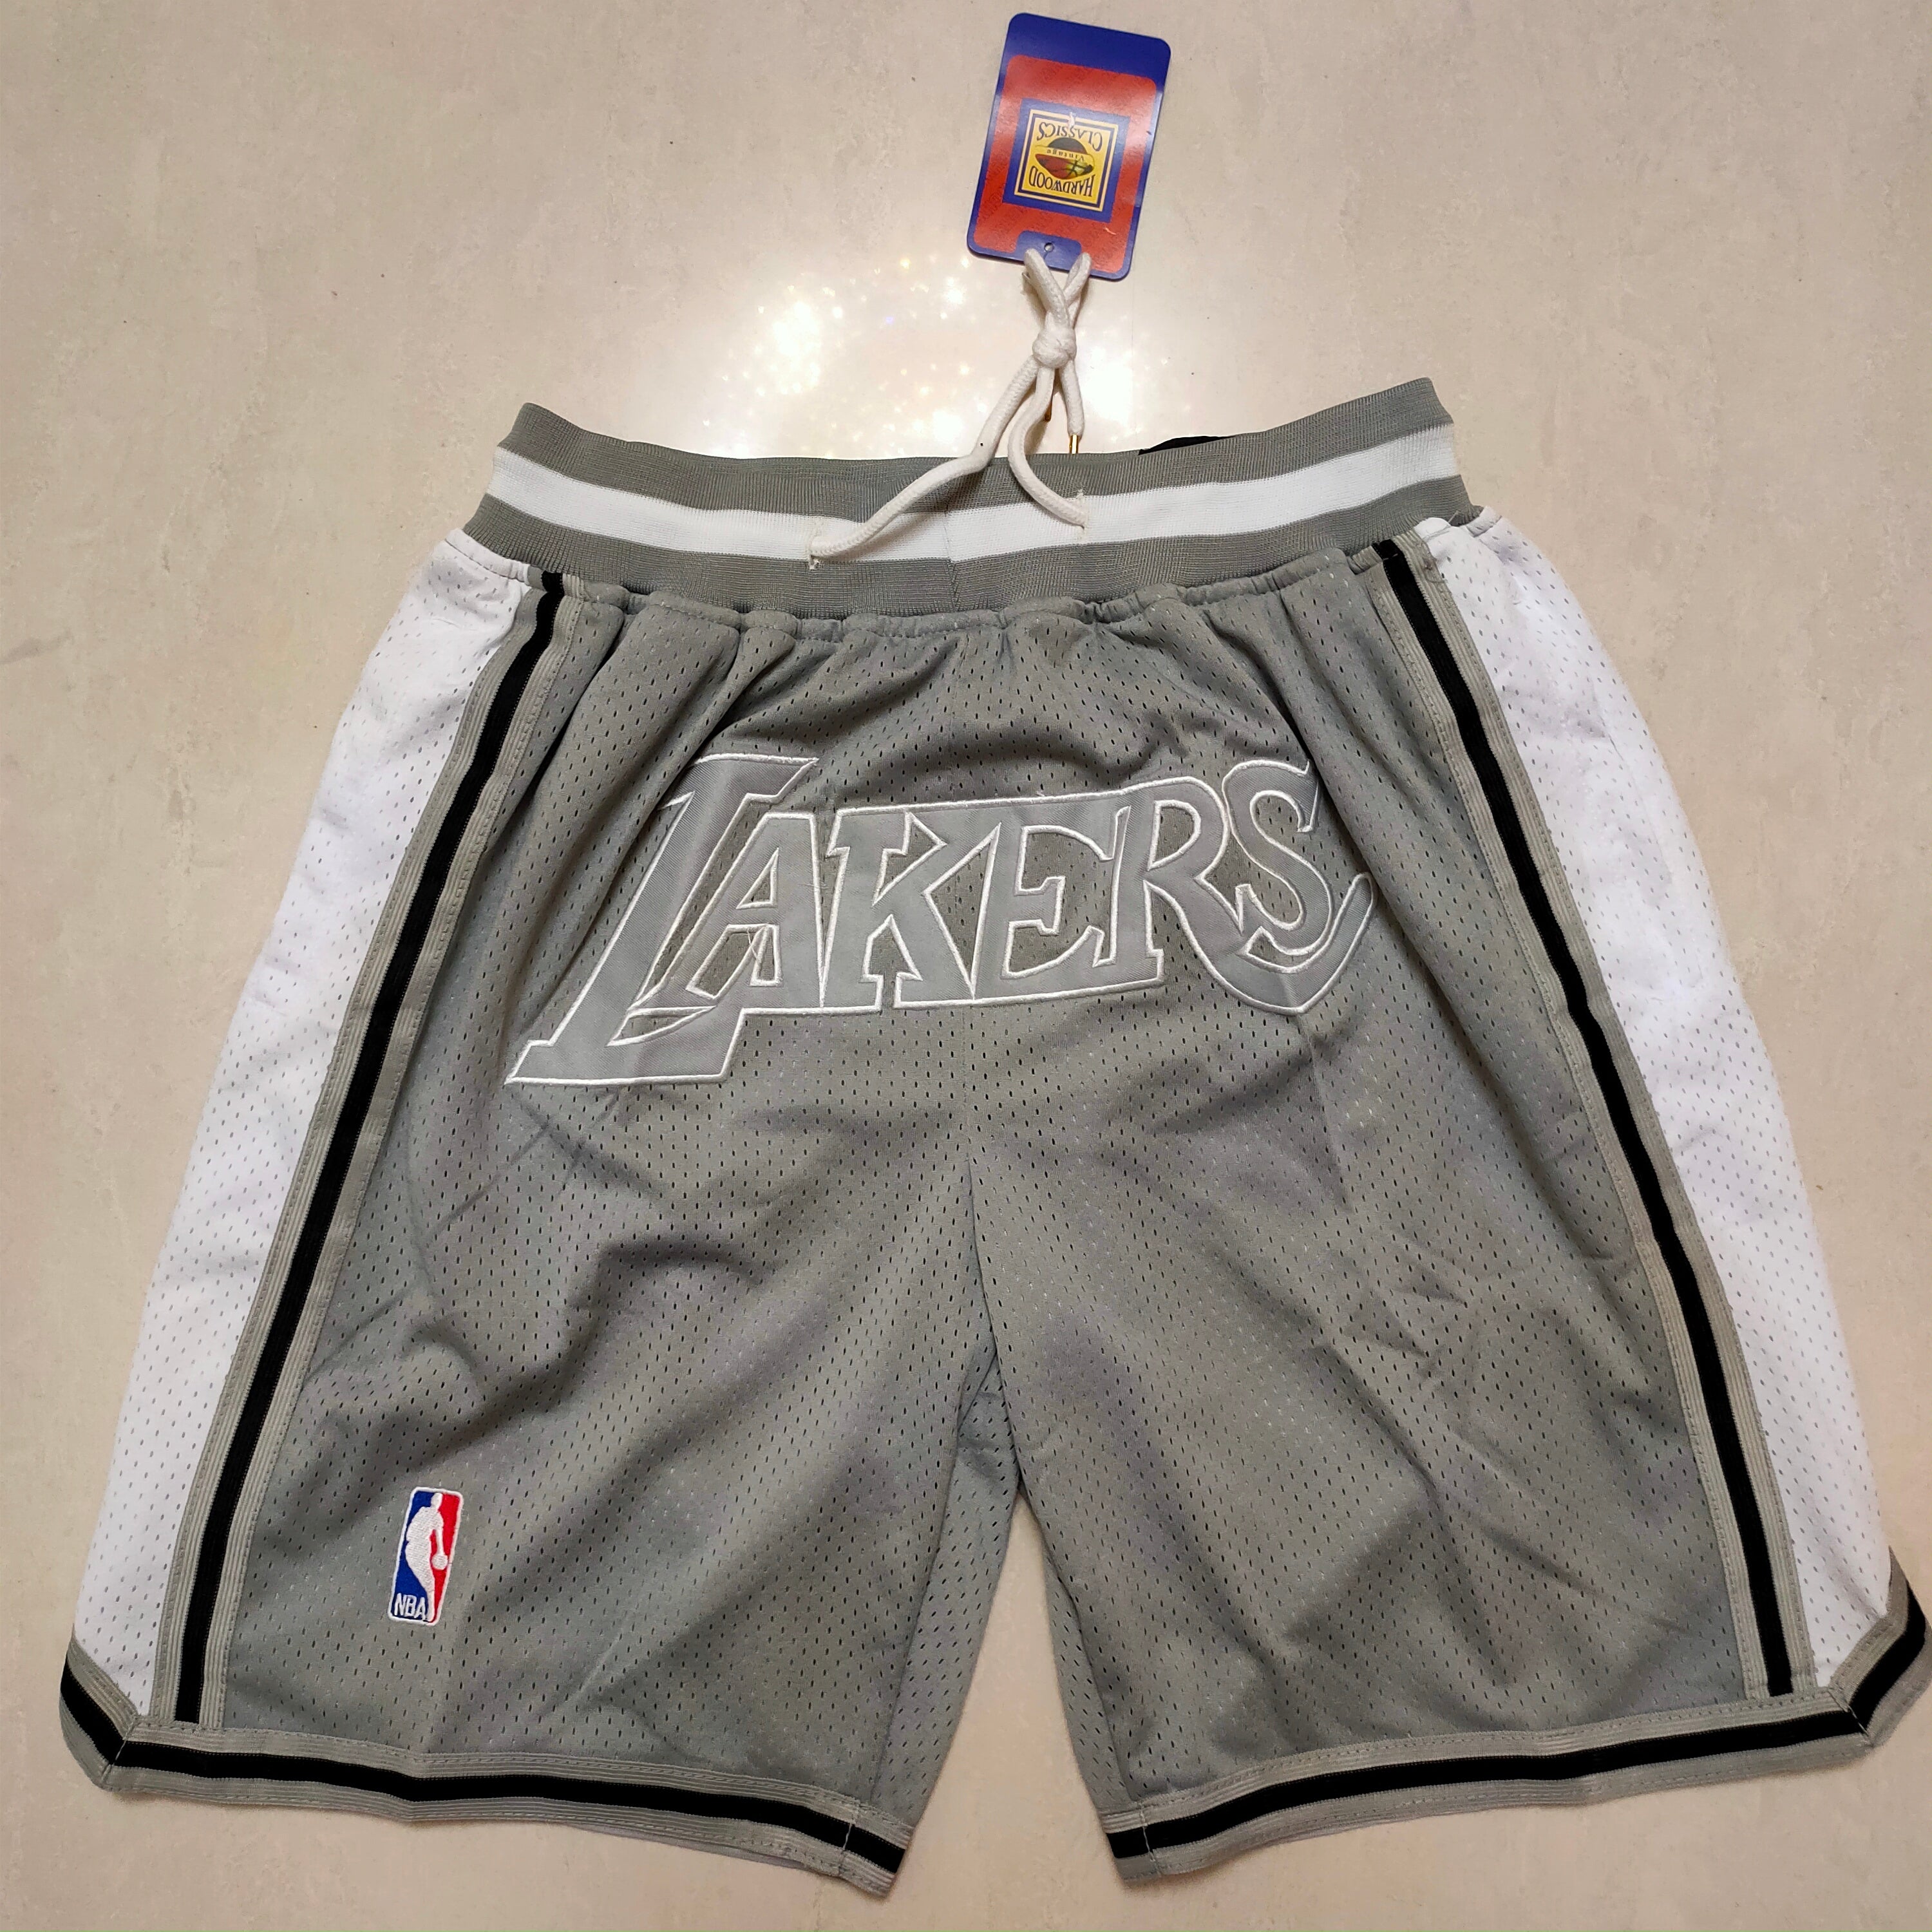 Lakers grey shorts